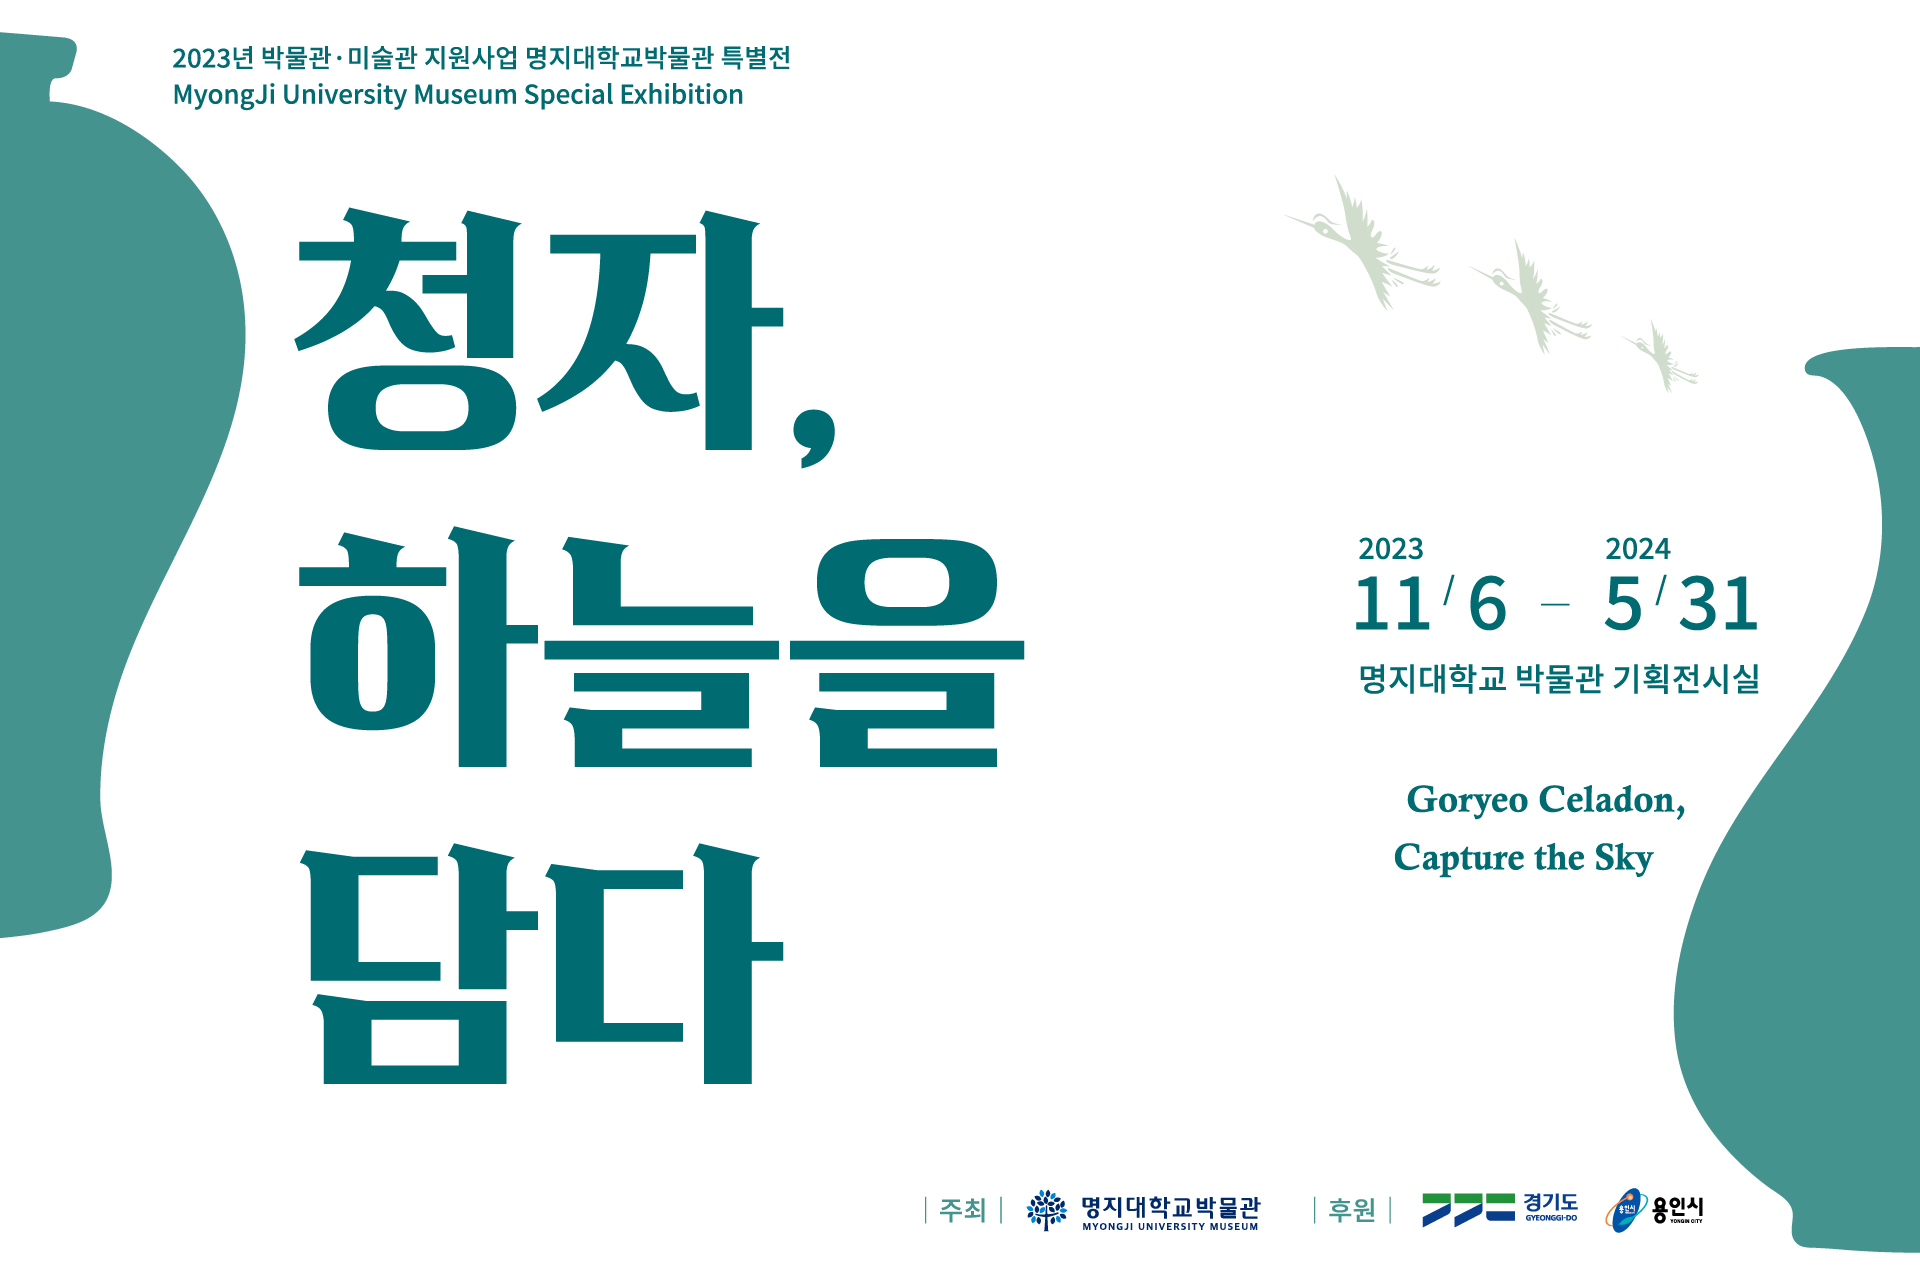 명지대 박물관, 「청자, 하늘을 담다」 특별전 개최 첨부 이미지